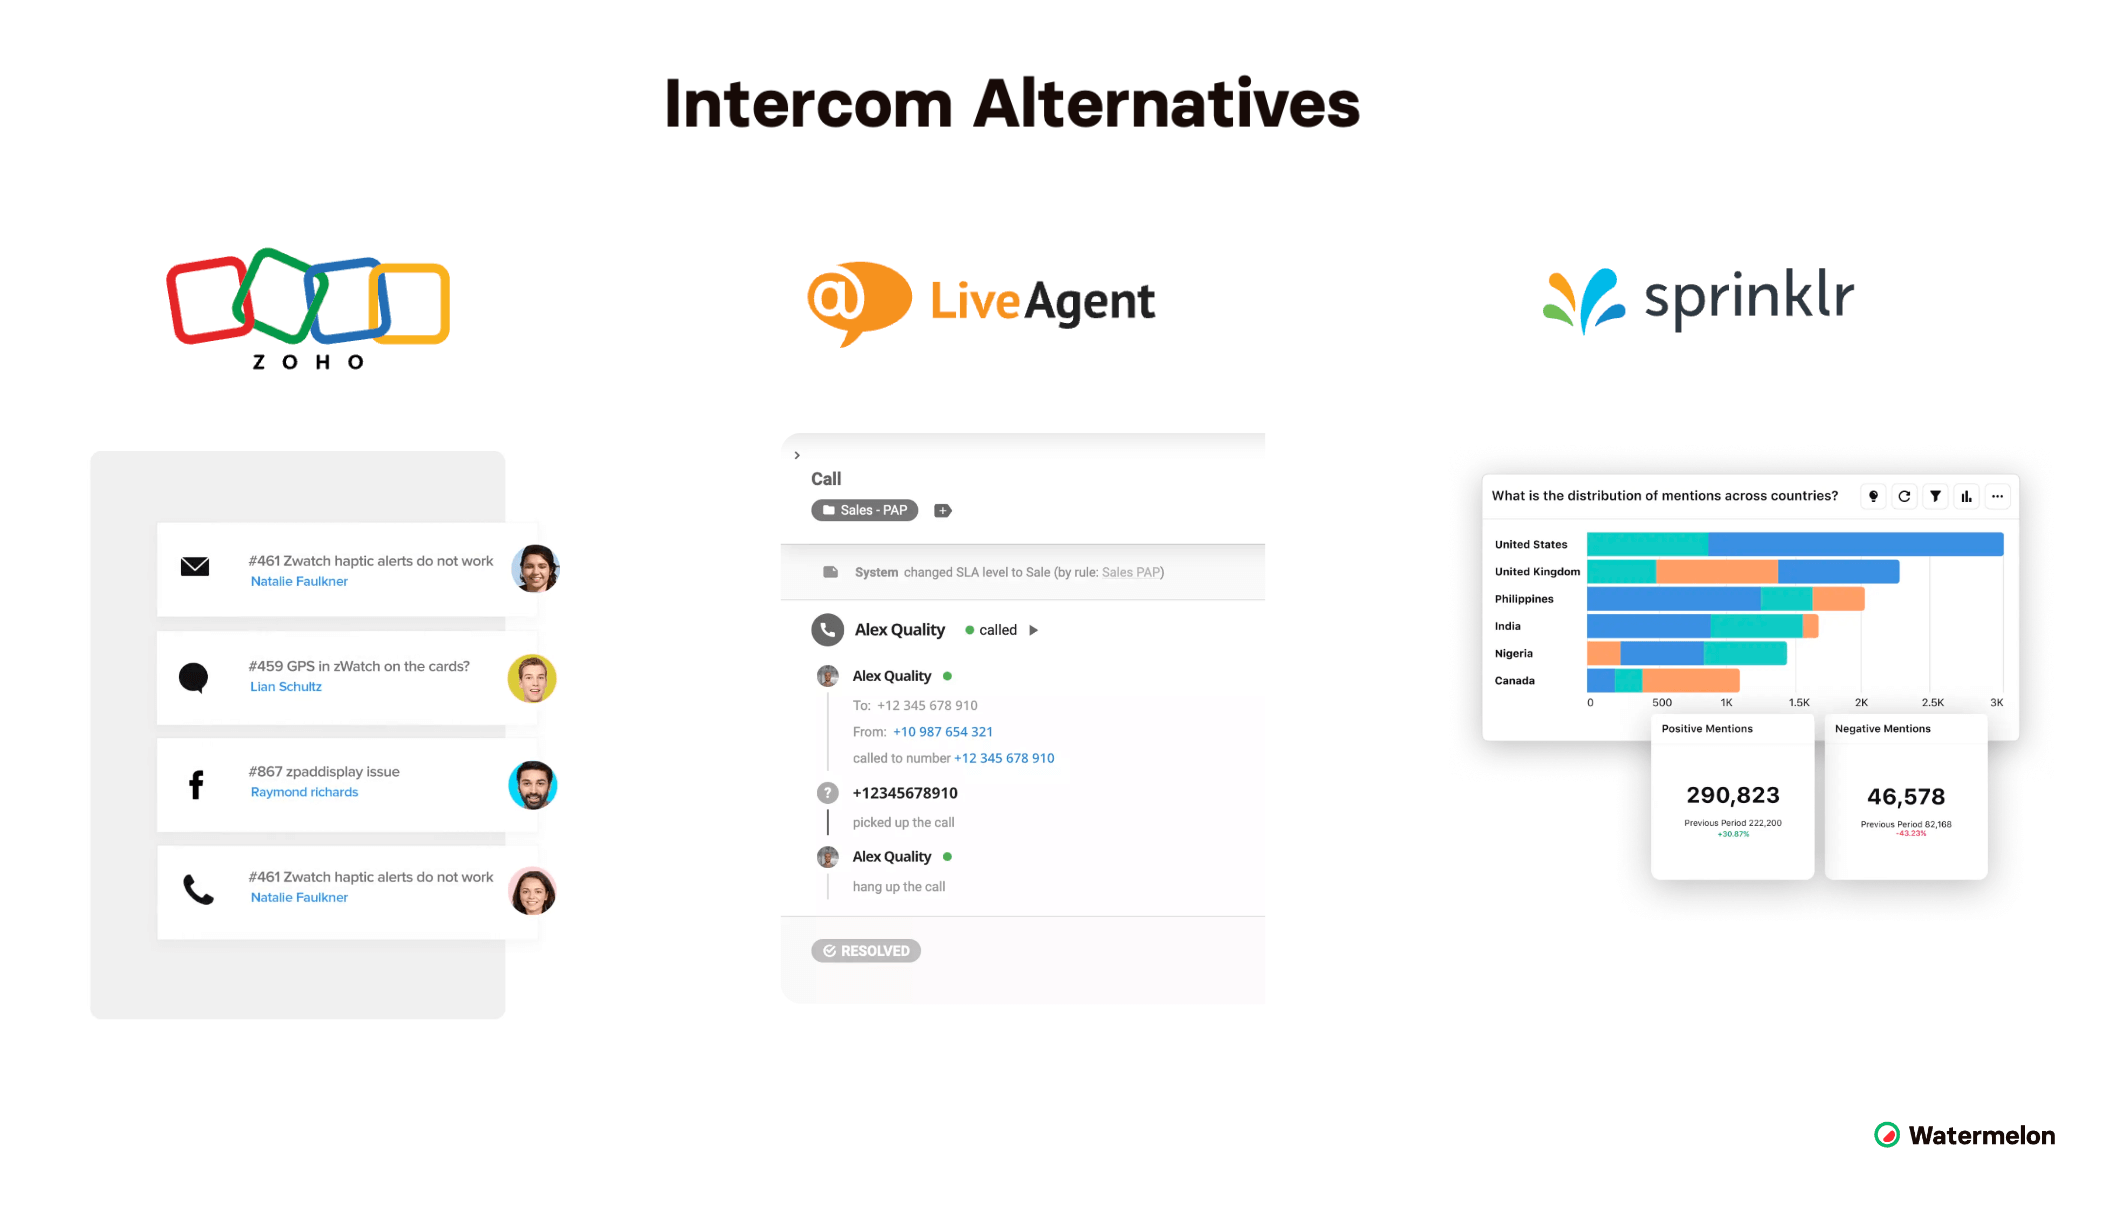 Top 3 Intercom Alternatives